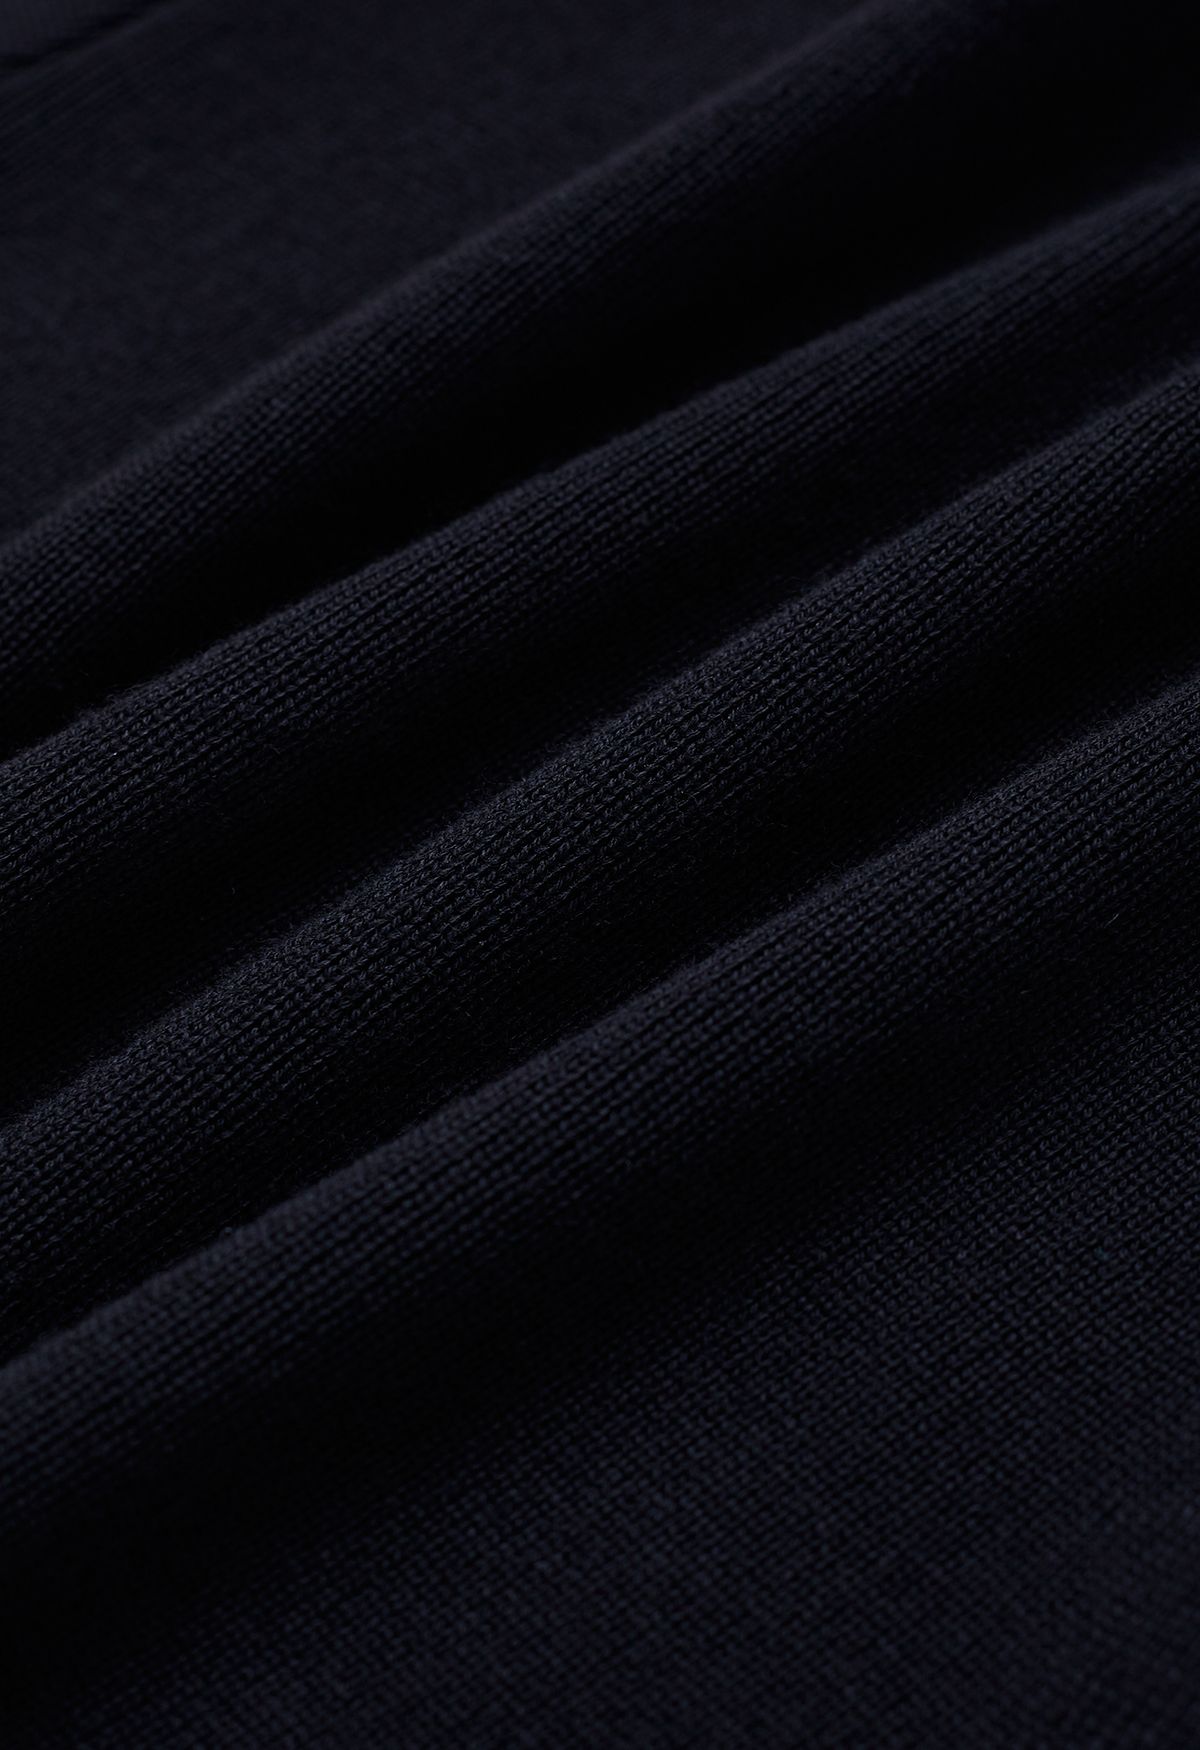 Self-Tie Bowknot Knit Crop Top in Black